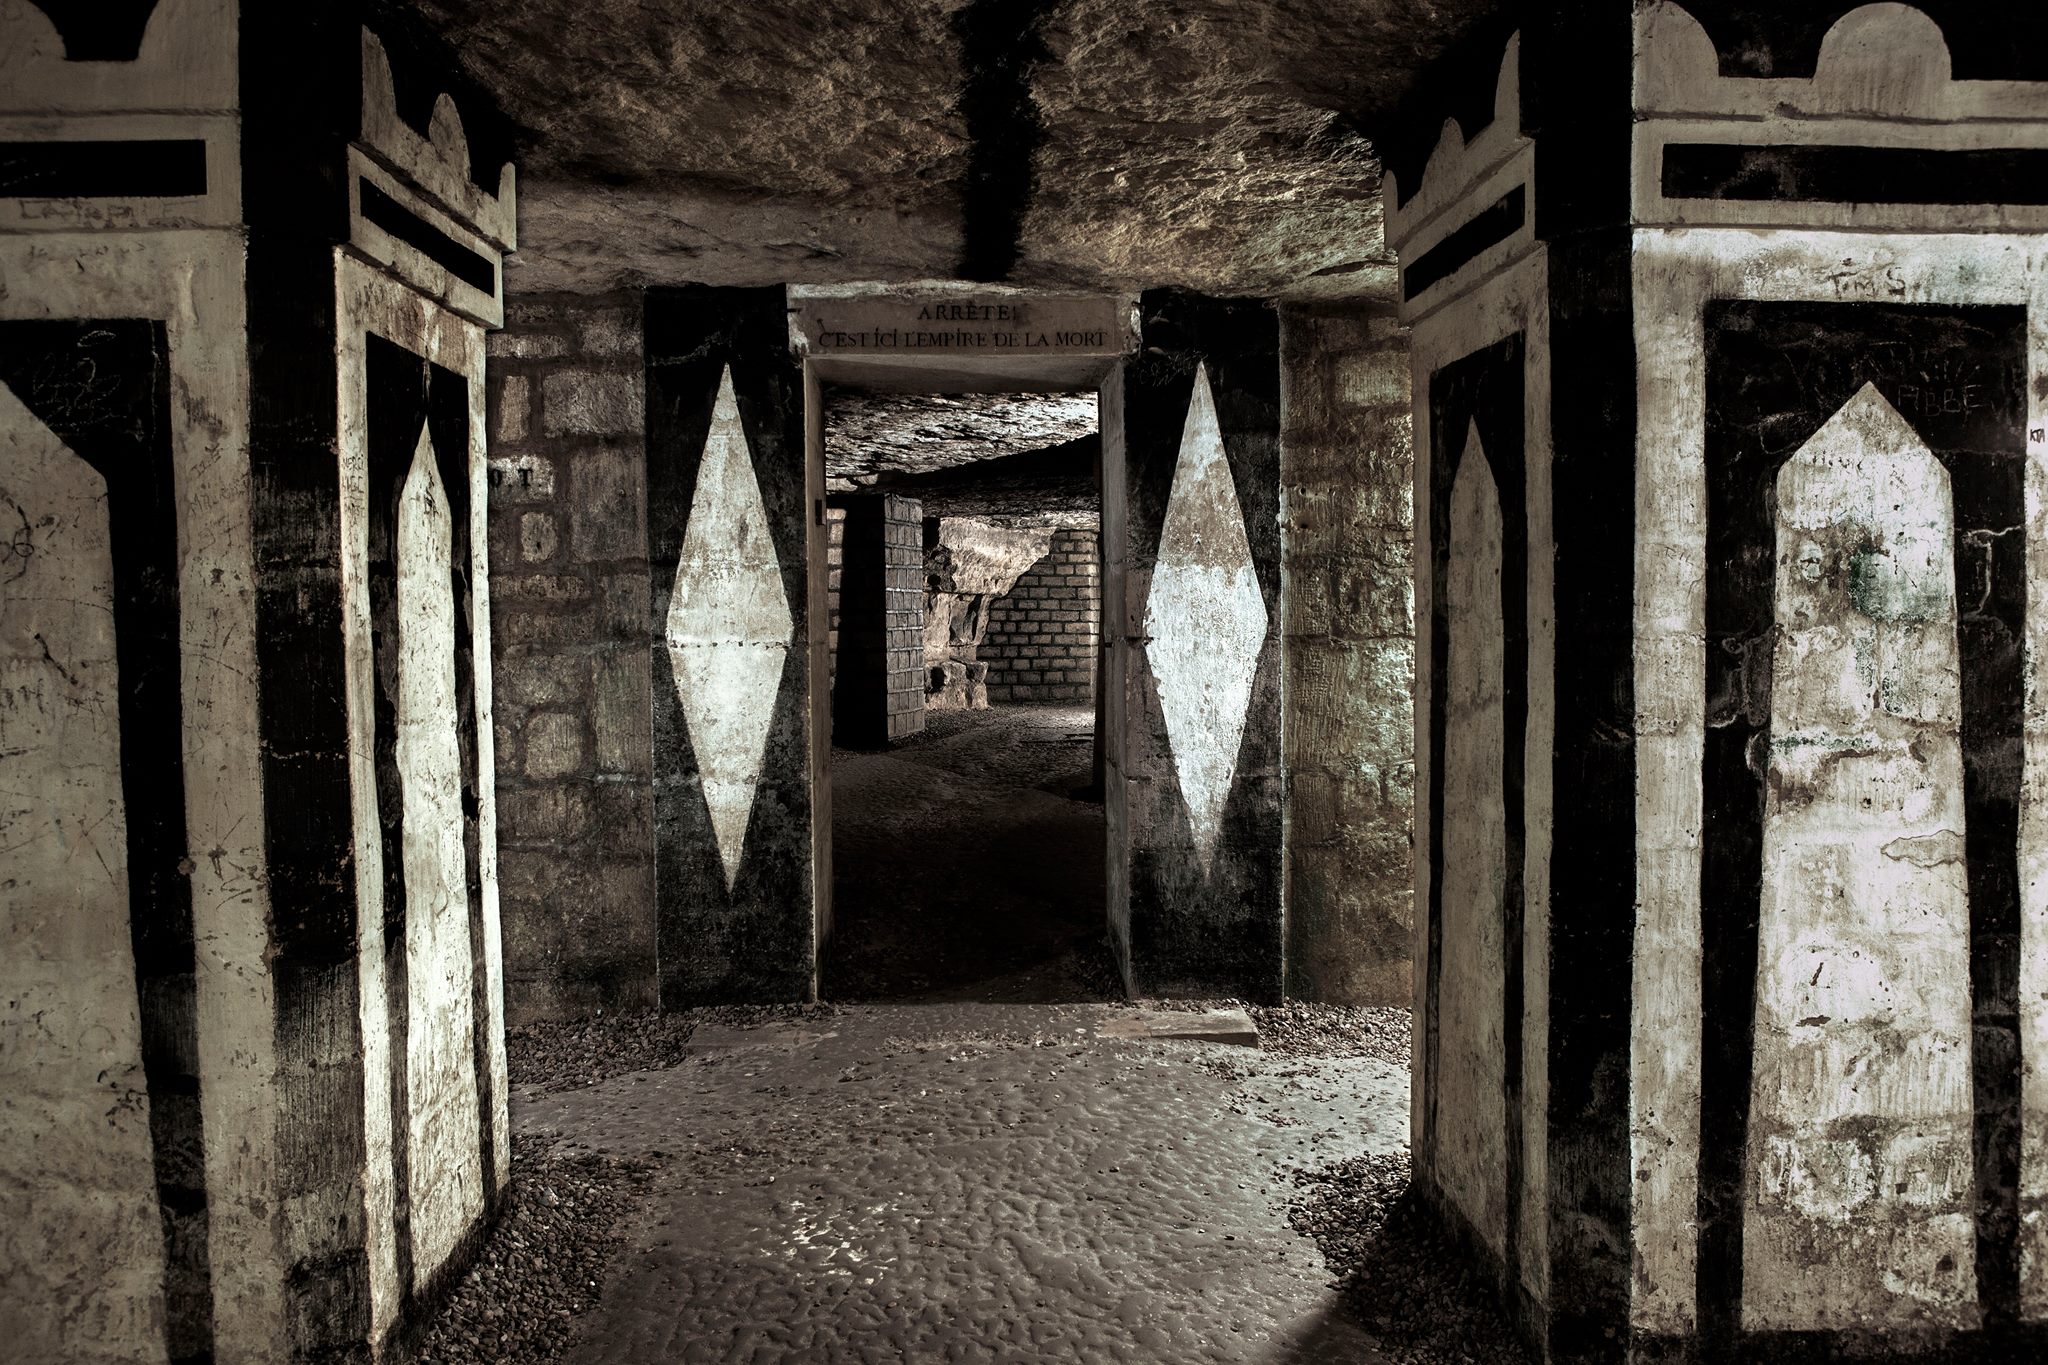 Catacombs Of Paris